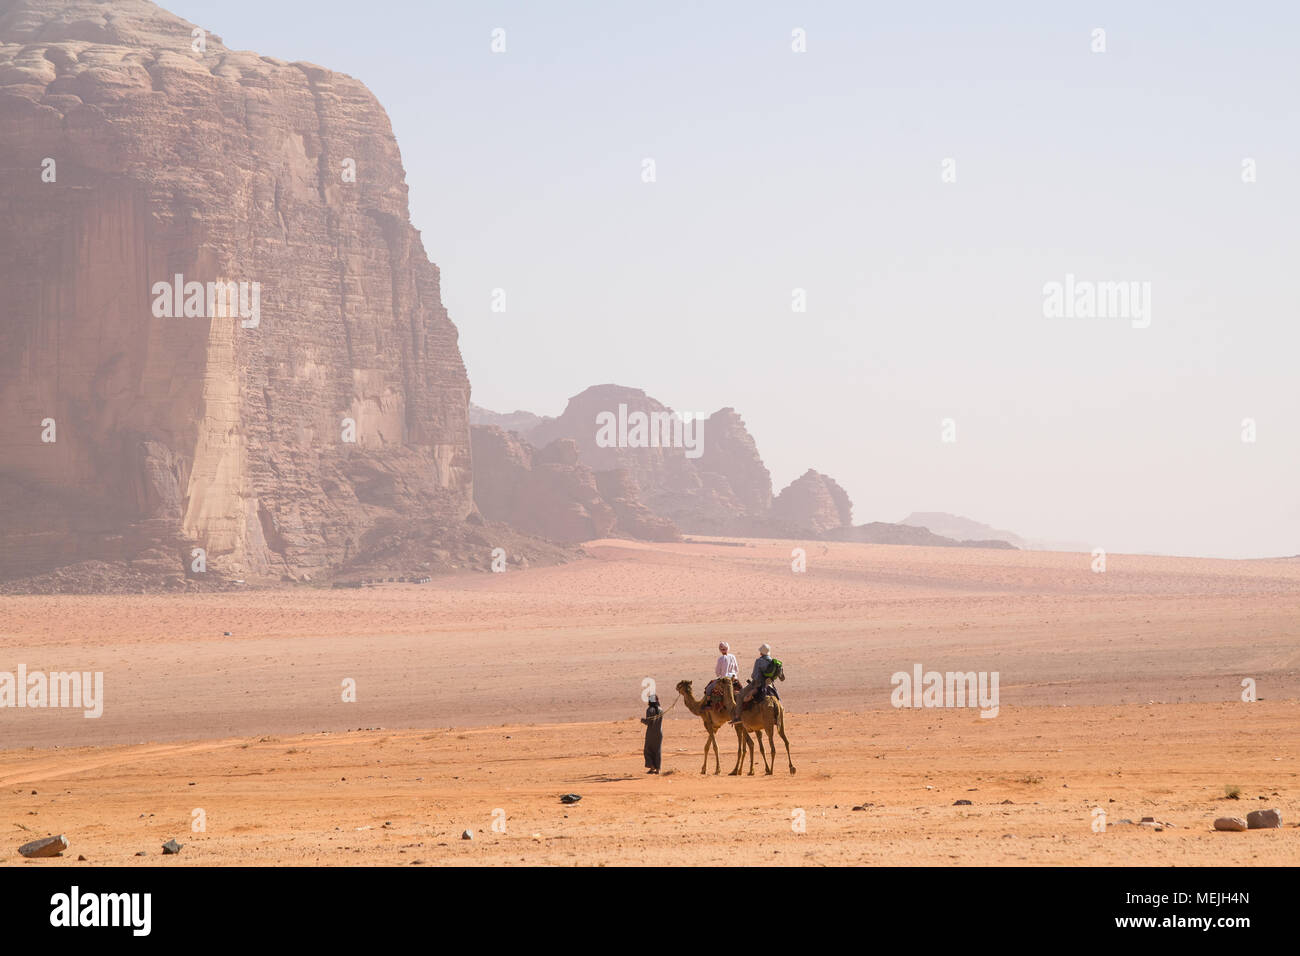 A bedouin is riding a camel at Wadi Rum (Jordan) Stock Photo